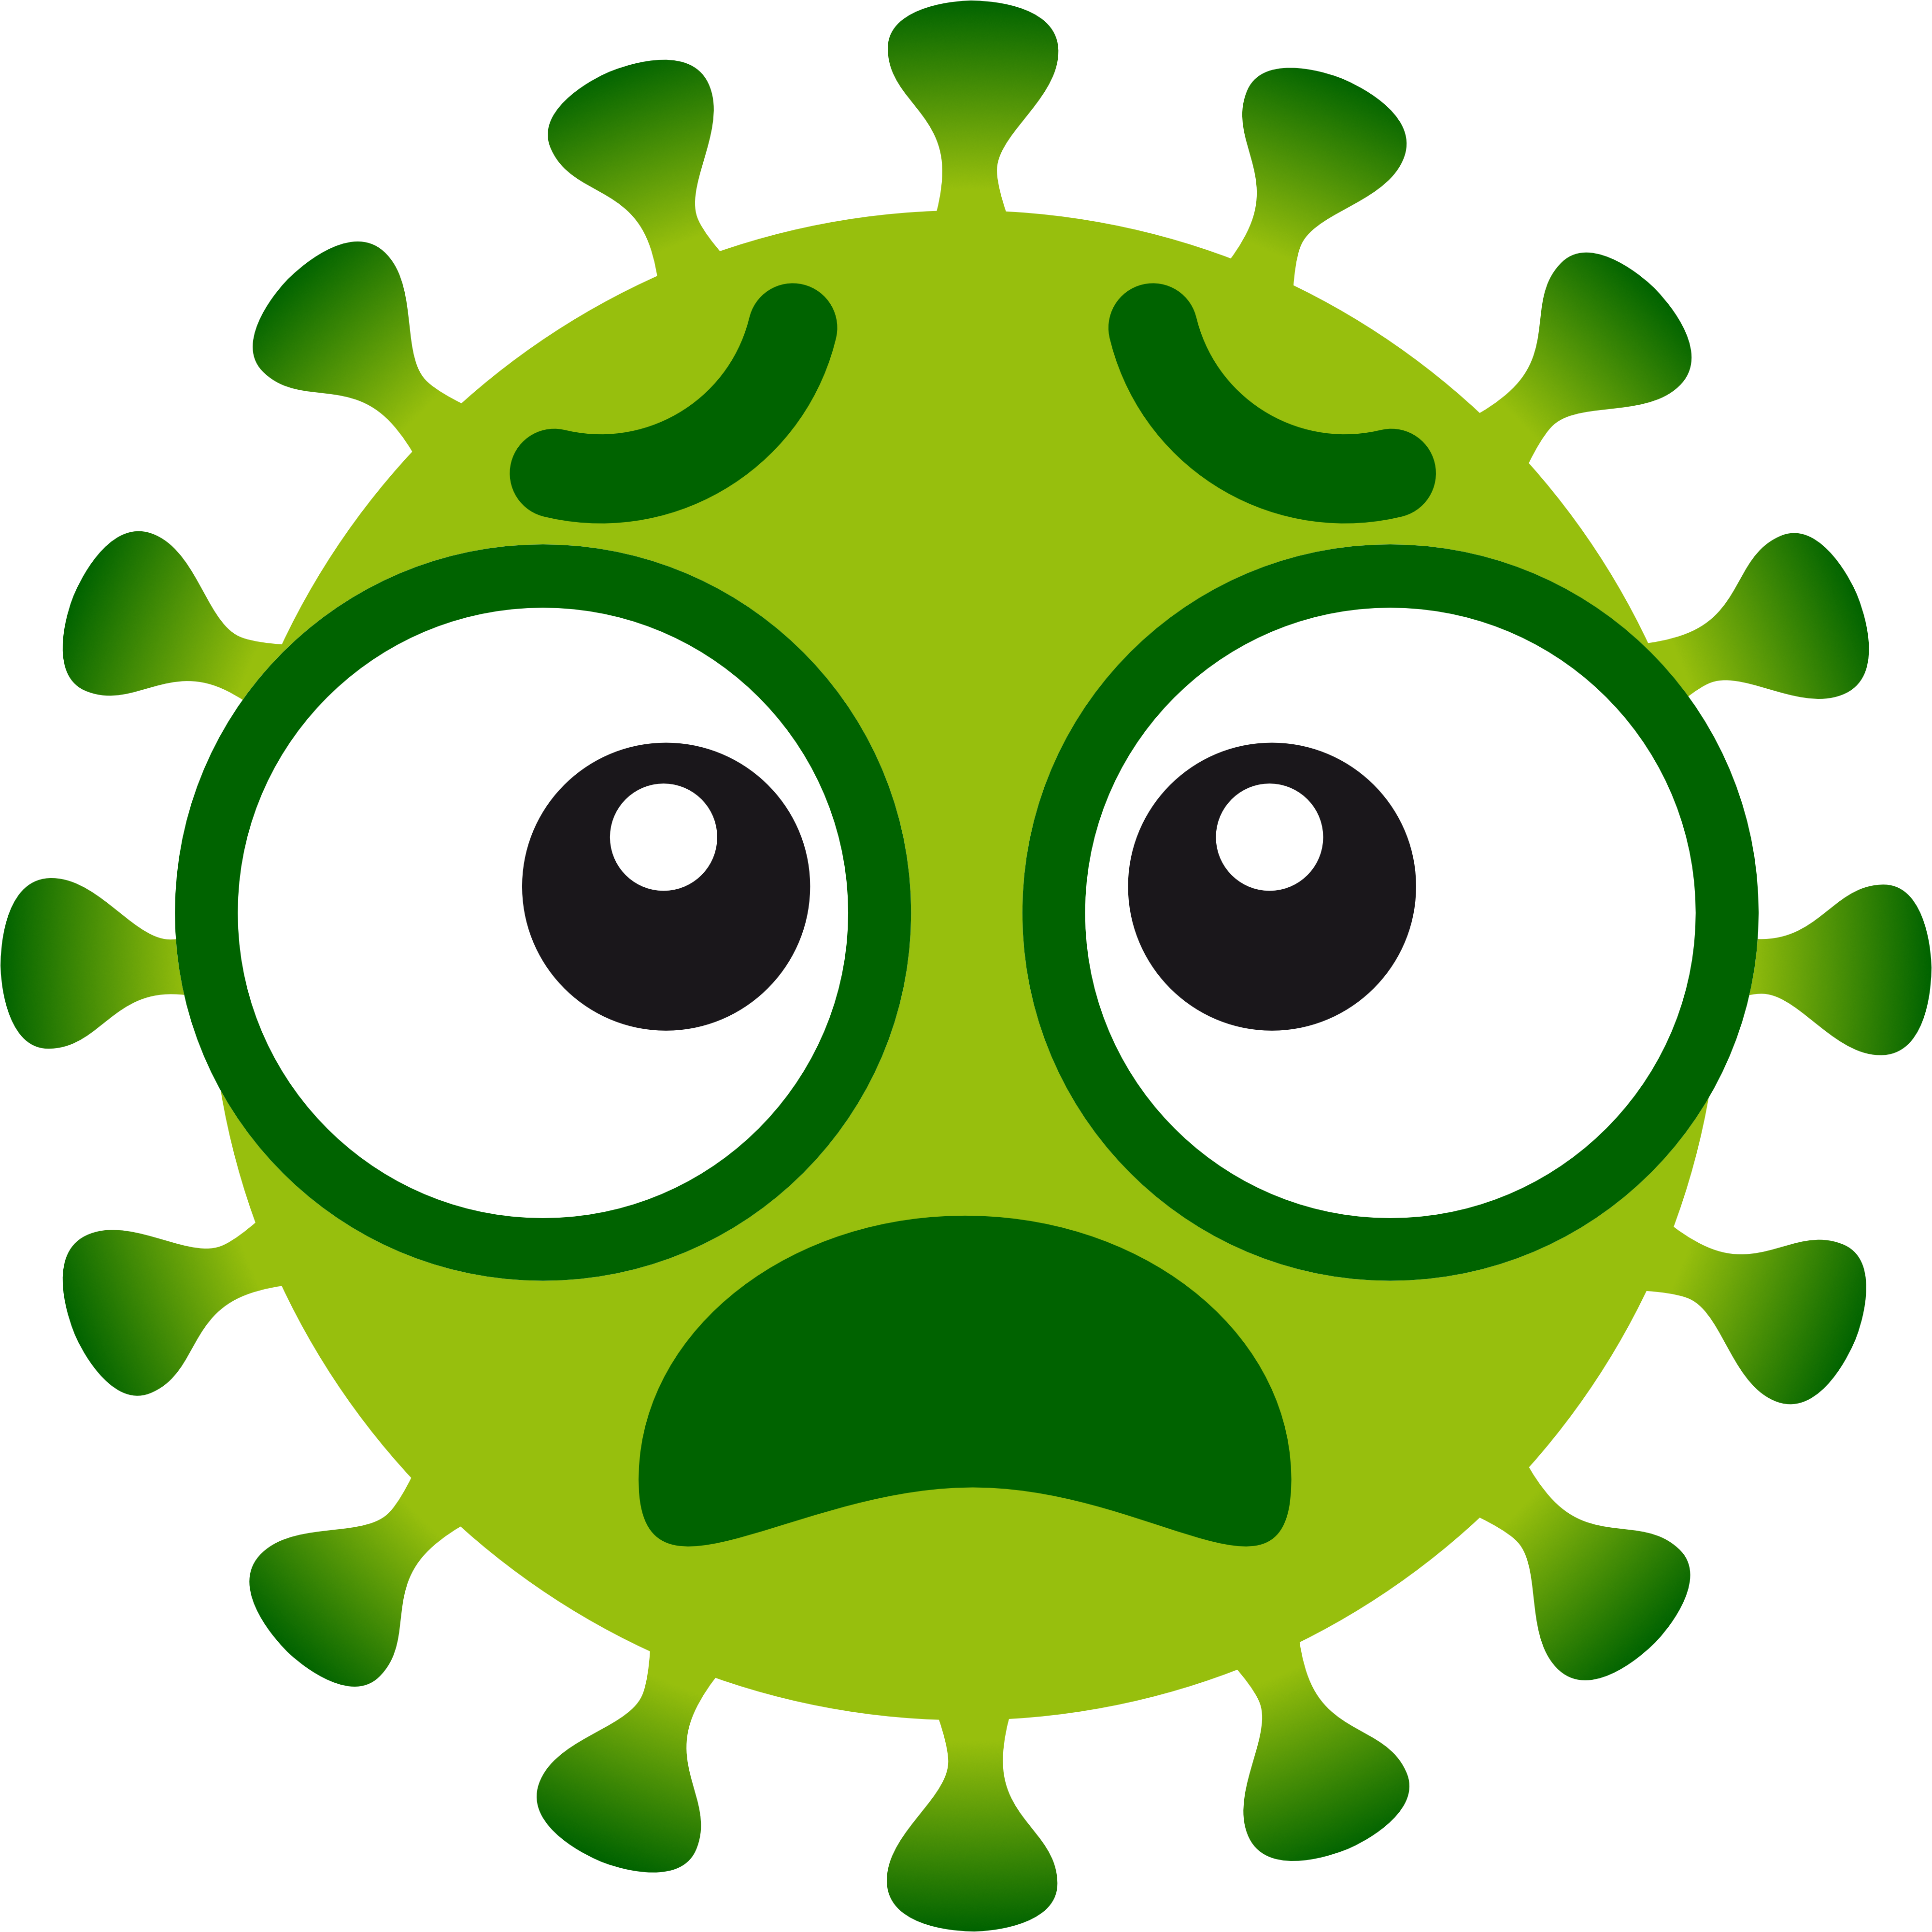 Векторный коронавирус